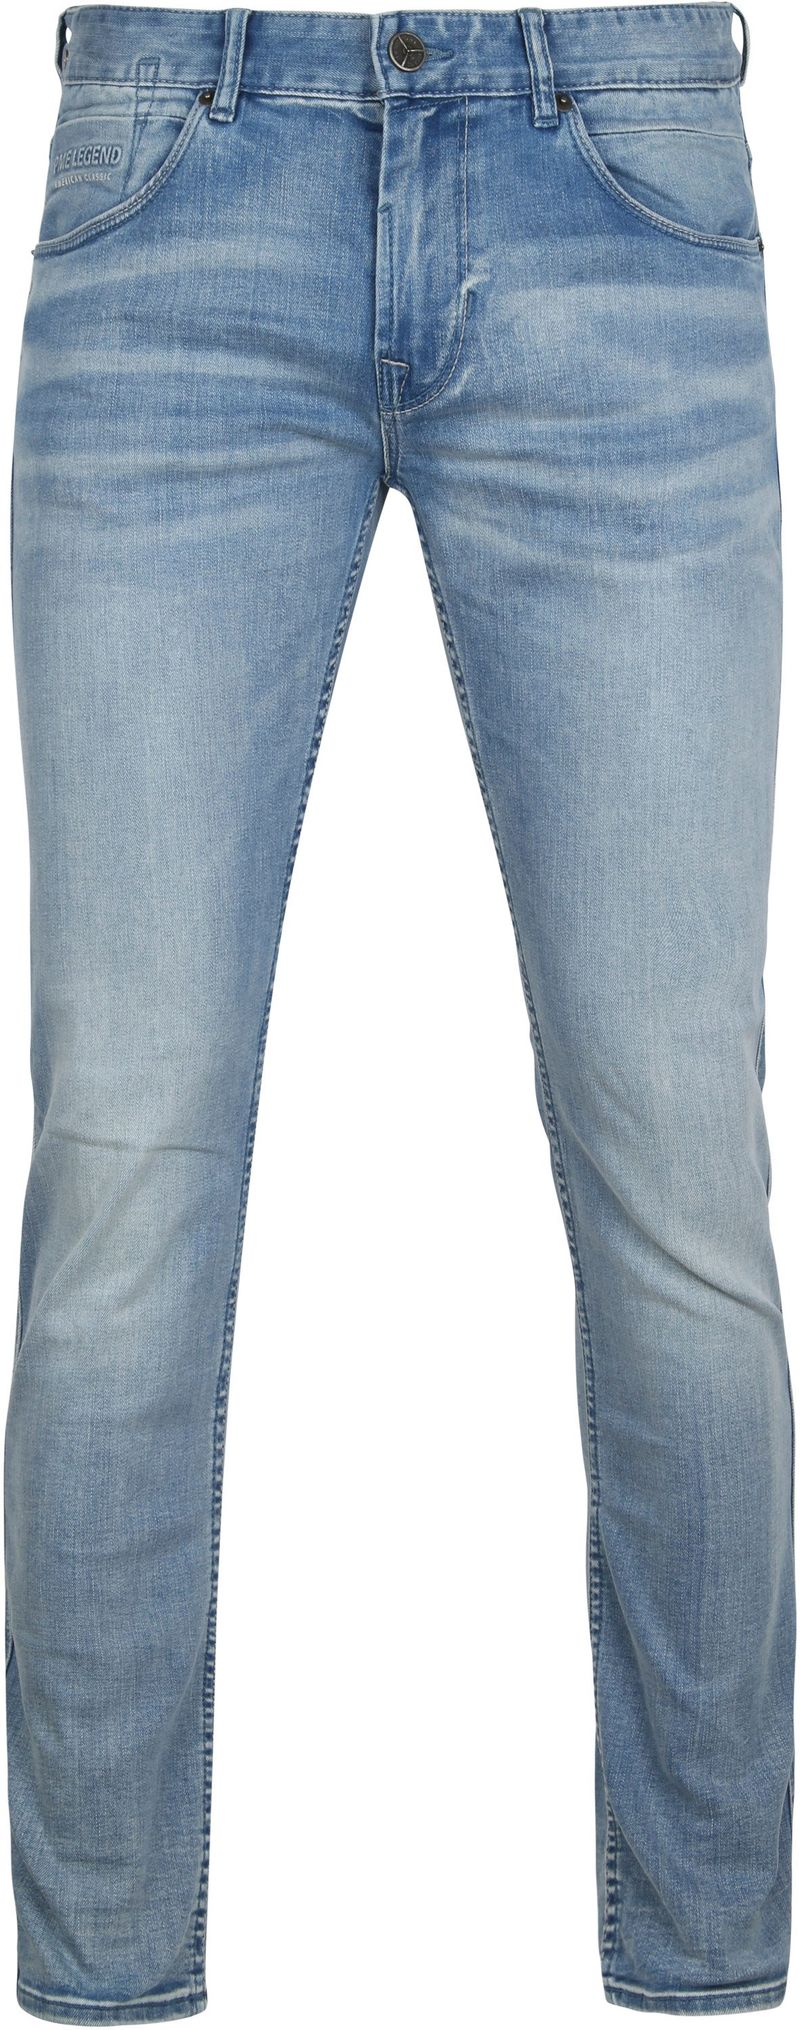 PME Legend Nightflight Jeans Blau - Größe W 35 - L 34 günstig online kaufen